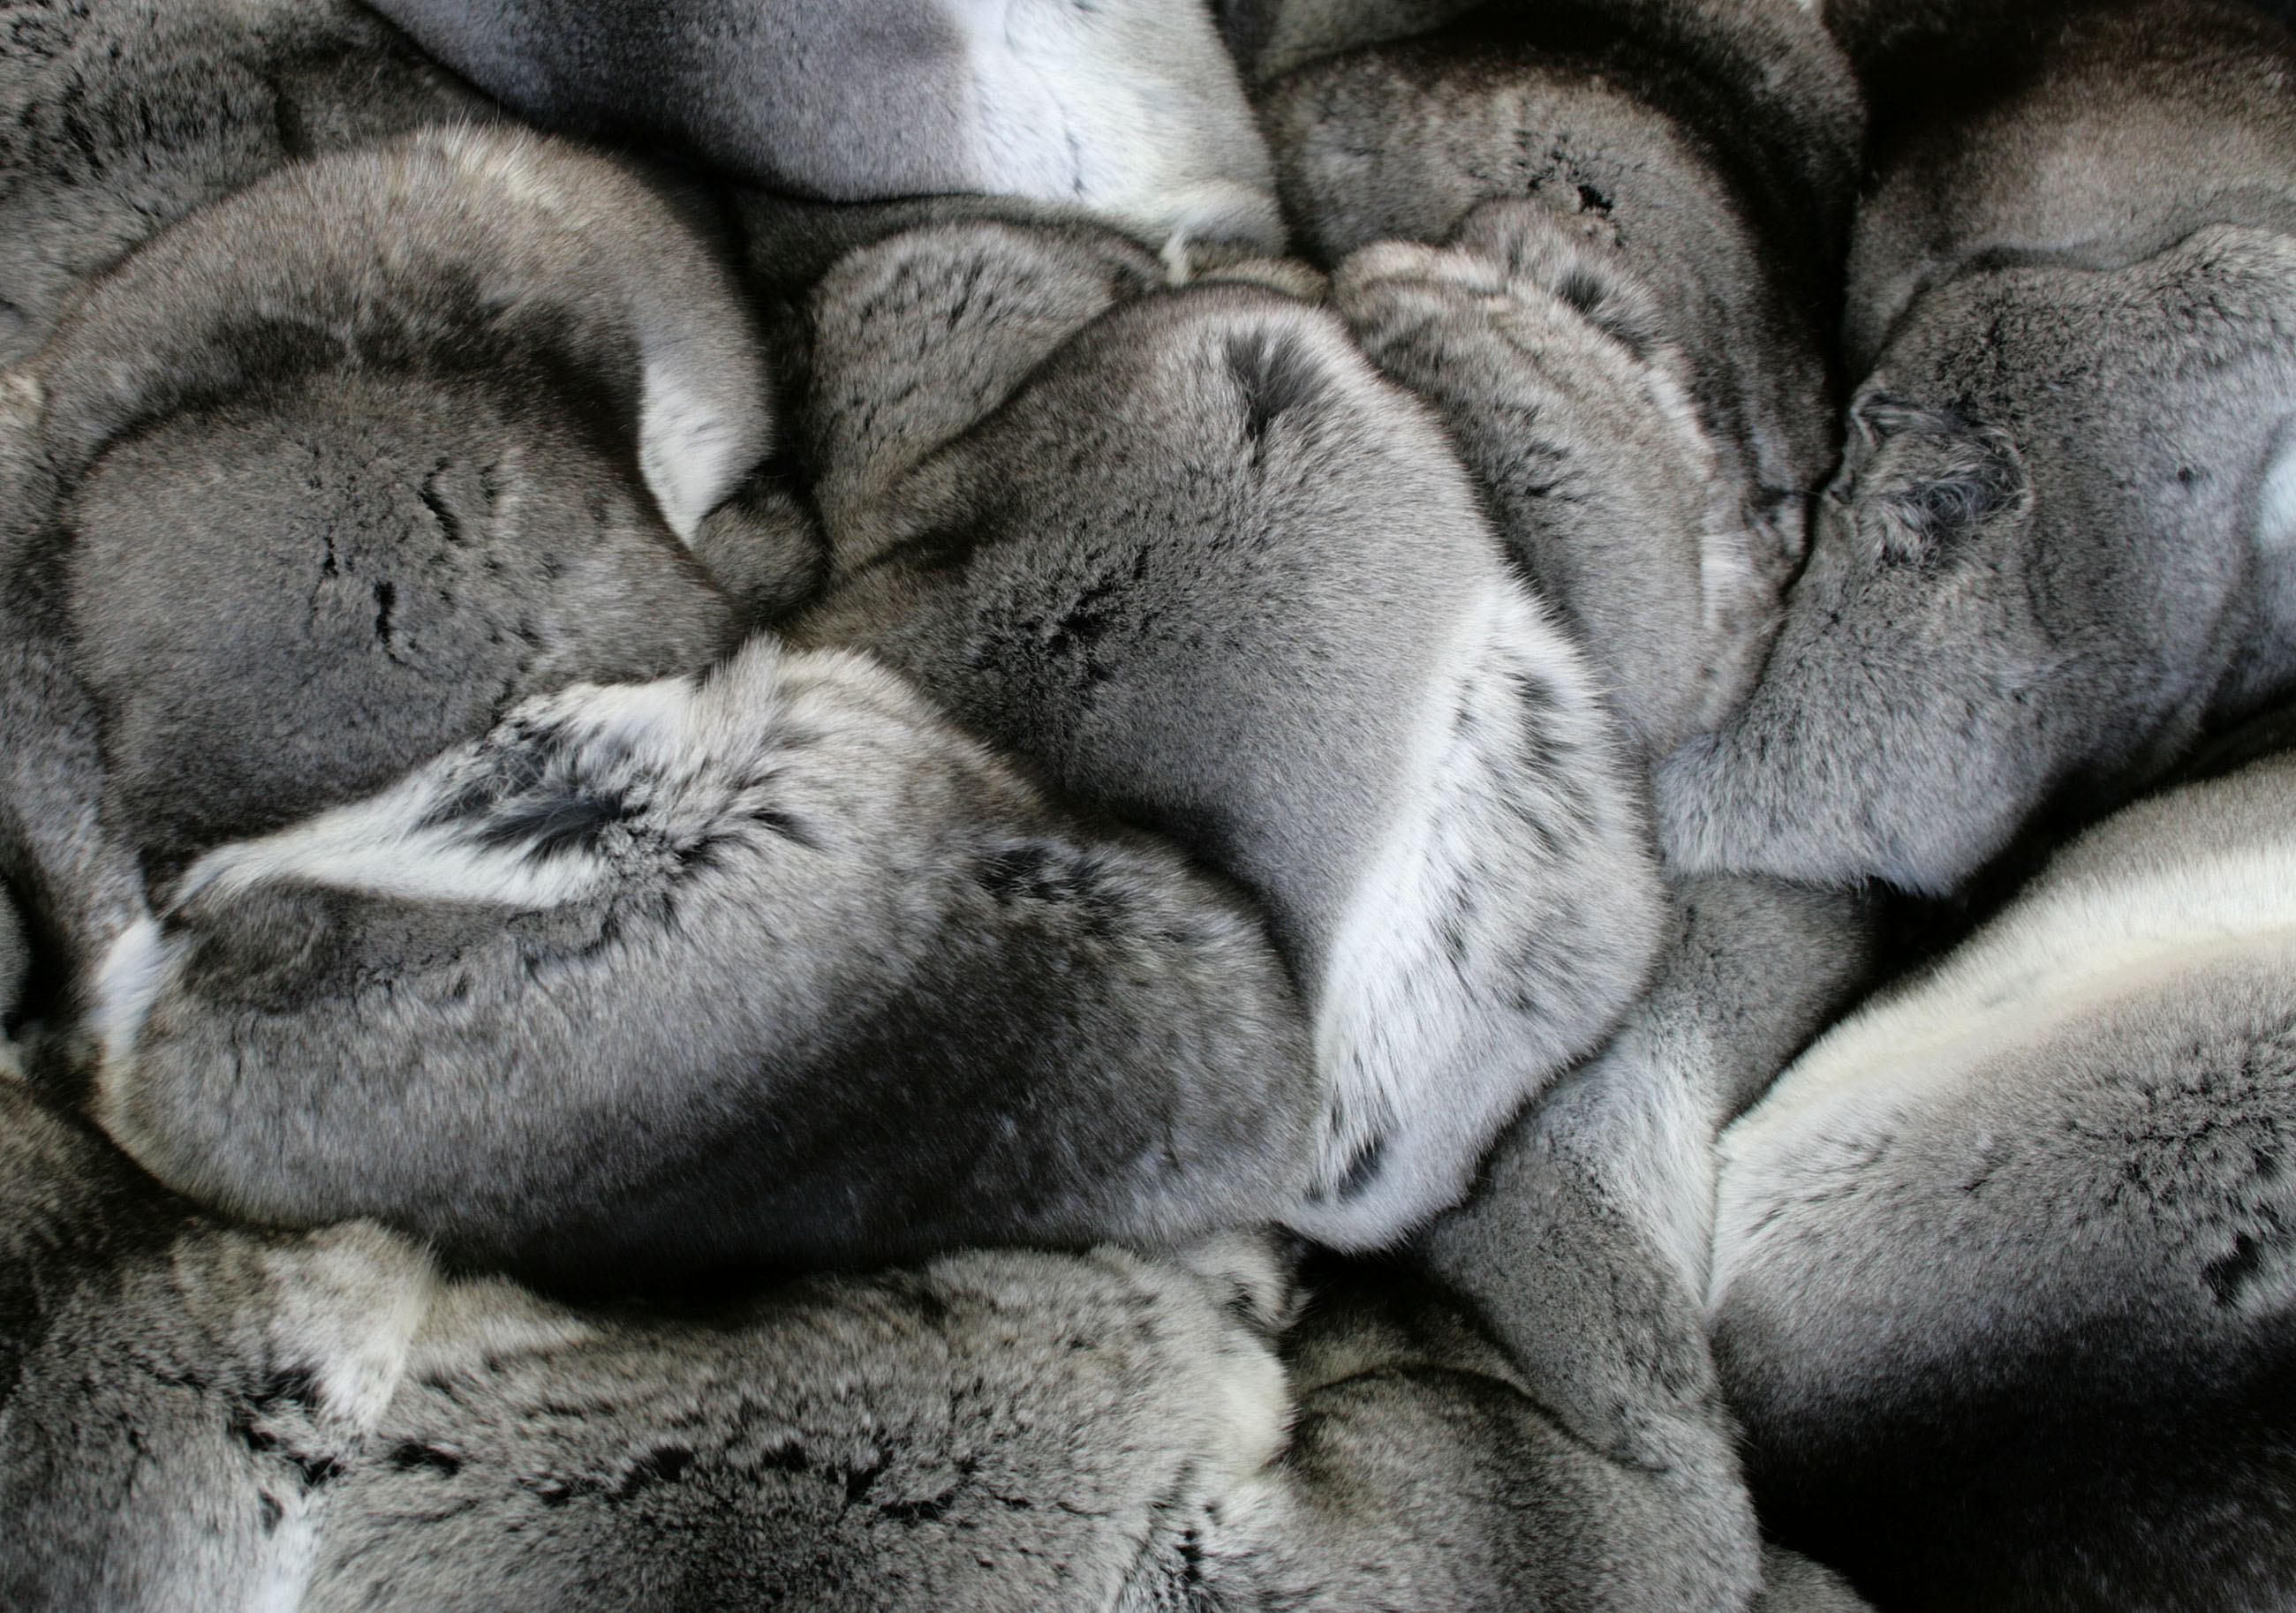 Framed Chinchilla fur blanket - natural furs